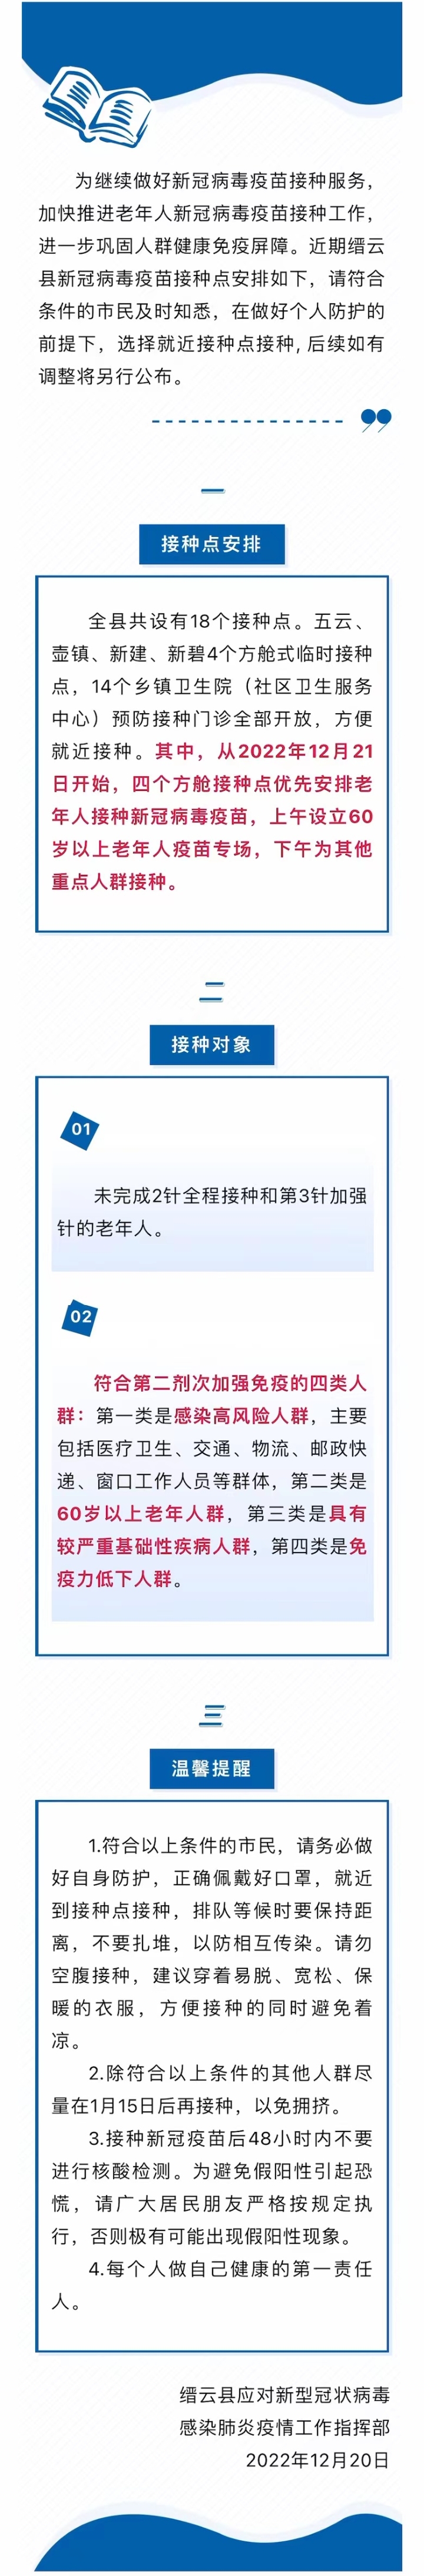 关于近期缙云县新冠病毒疫苗接种工作的通告.jpg